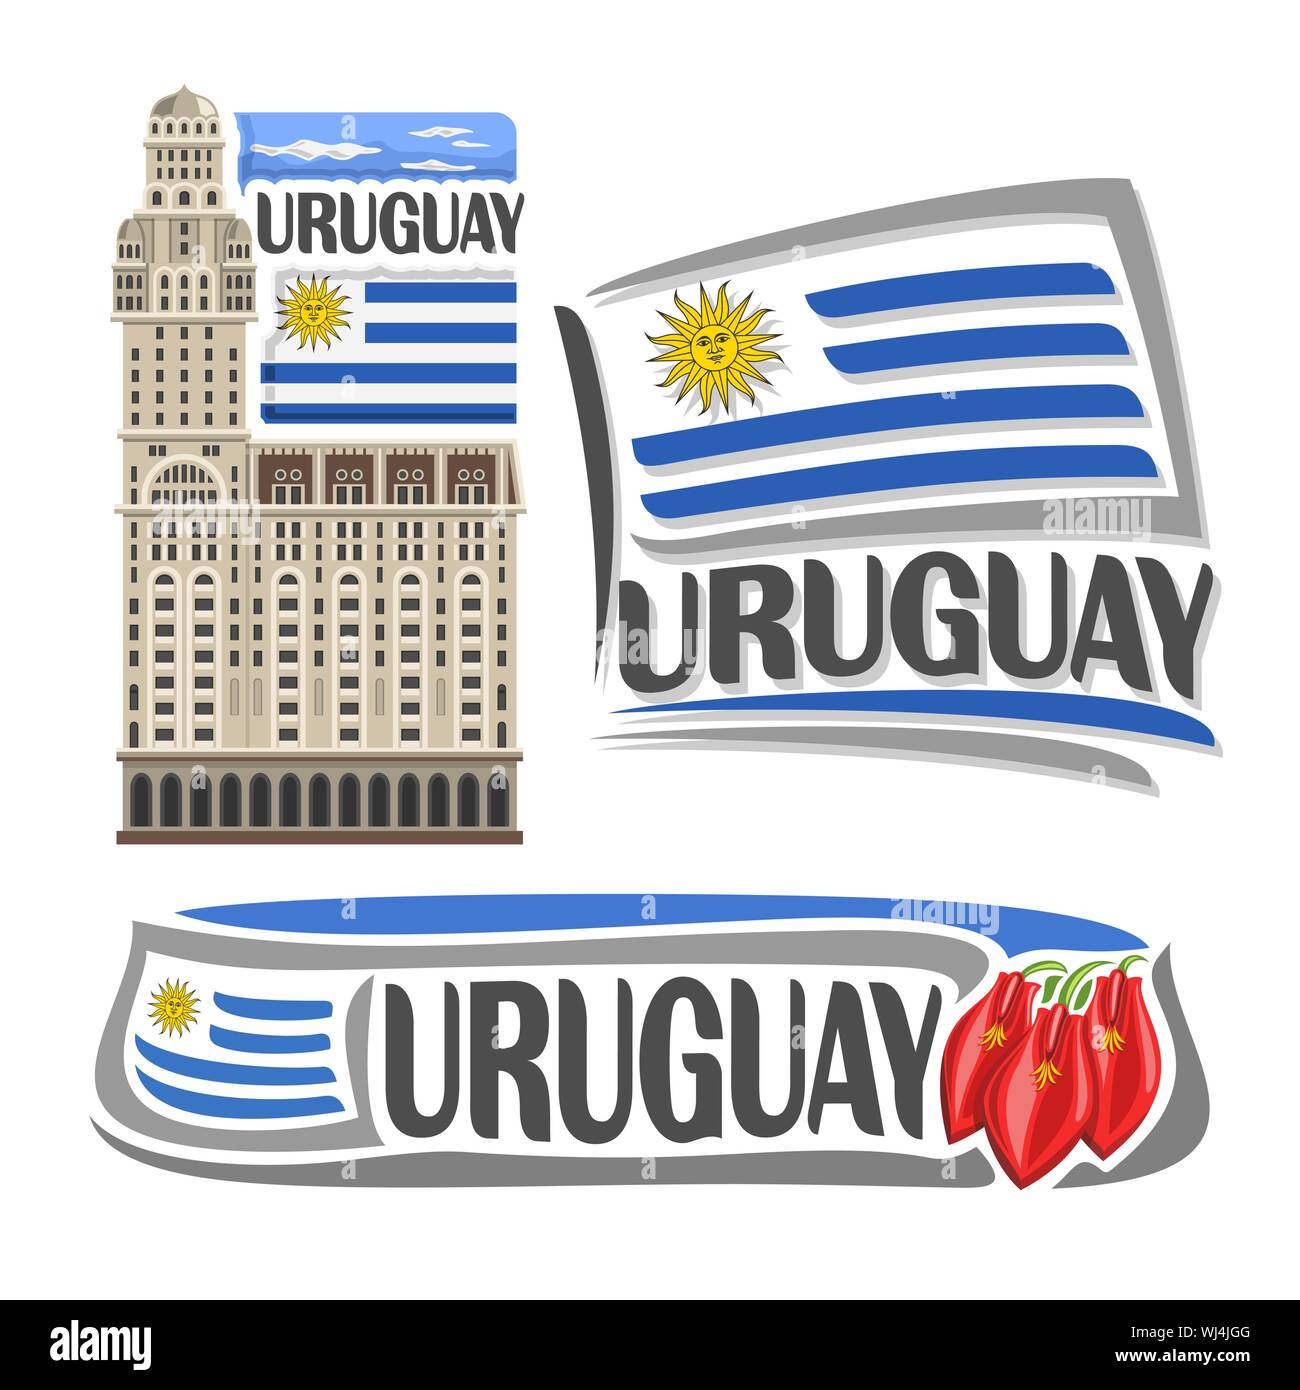 Il logo del vettore per Uruguay, 3 isolato immagini: palazzo salvo a Montevideo su stato nazionale Bandiera uruguayana e ceibo fiori. Illustrazione Vettoriale